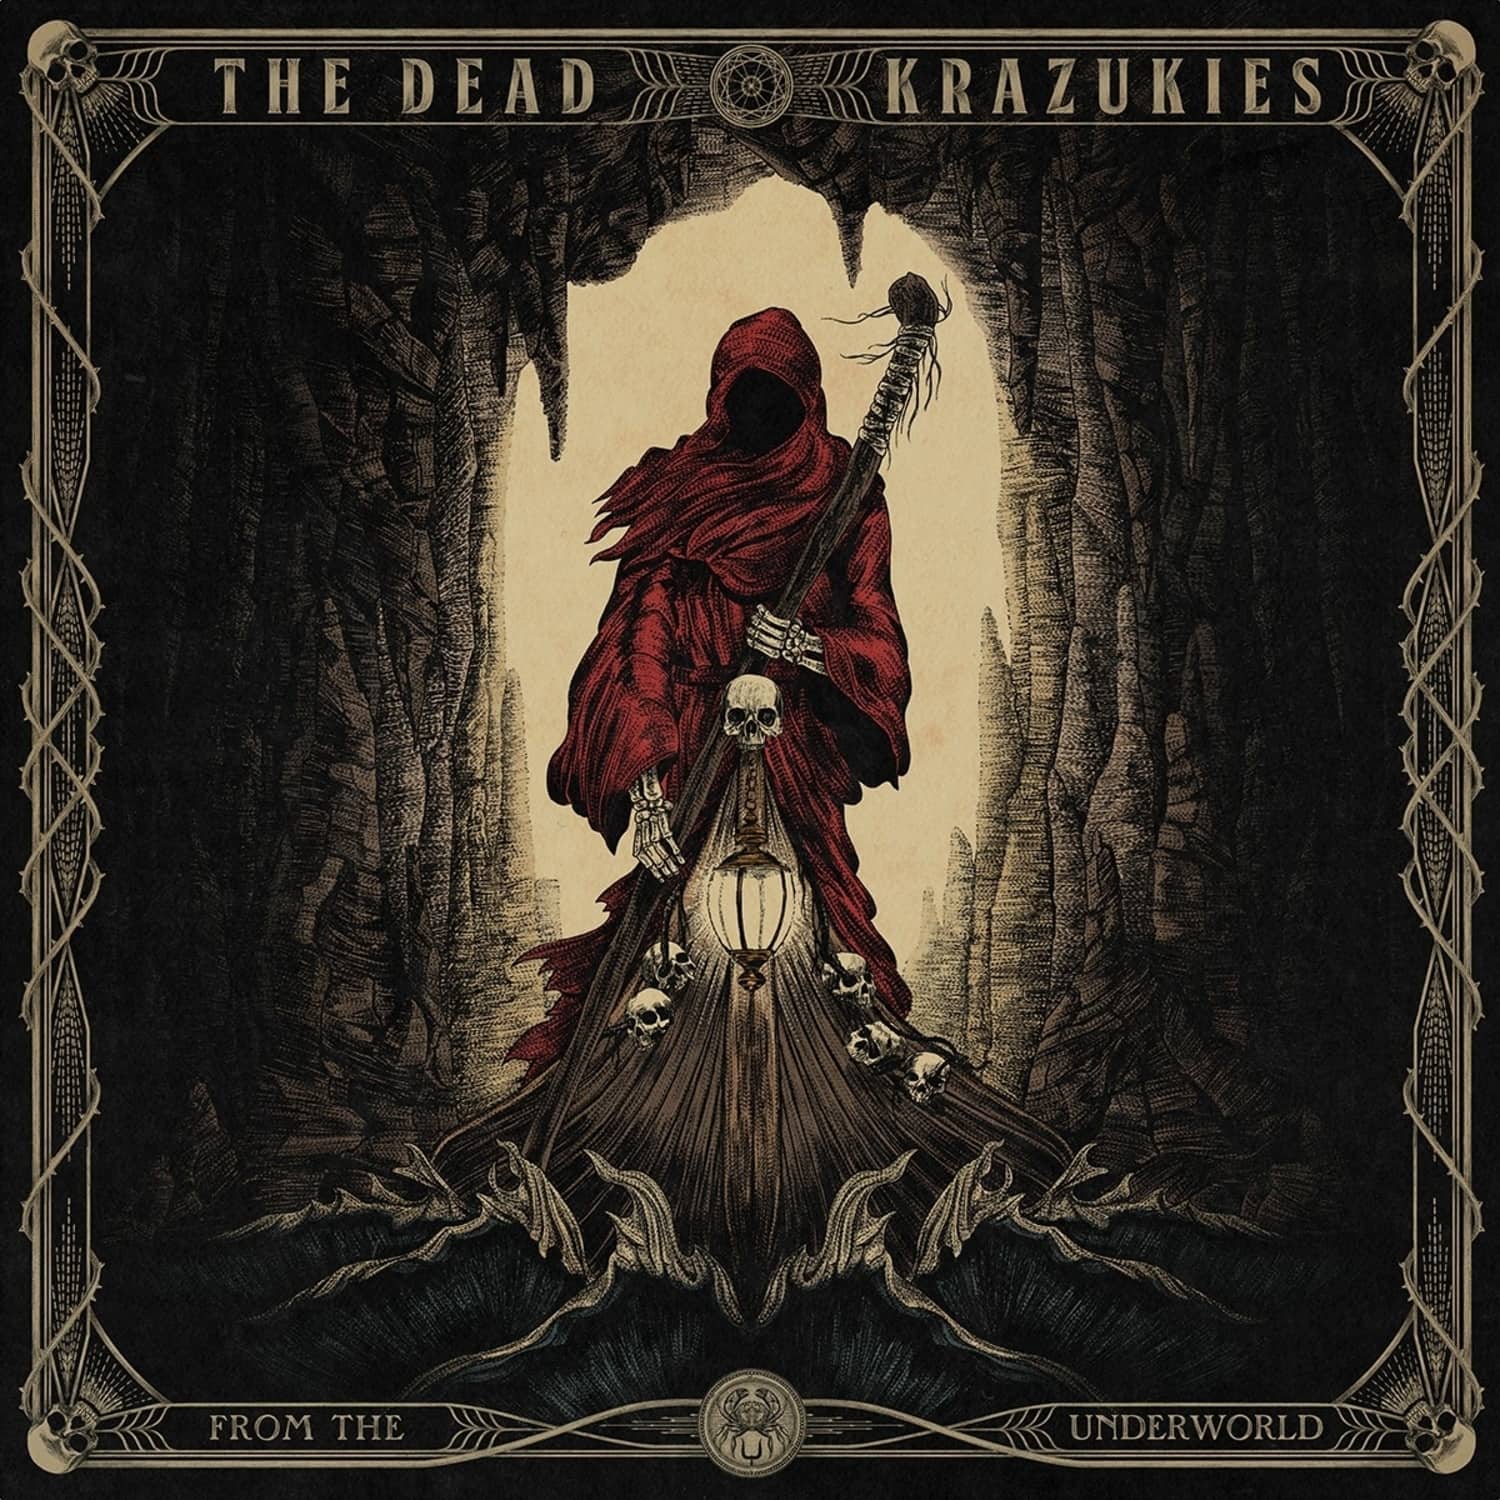  The Dead Krazukies - FROM THE UNDERGROUND 